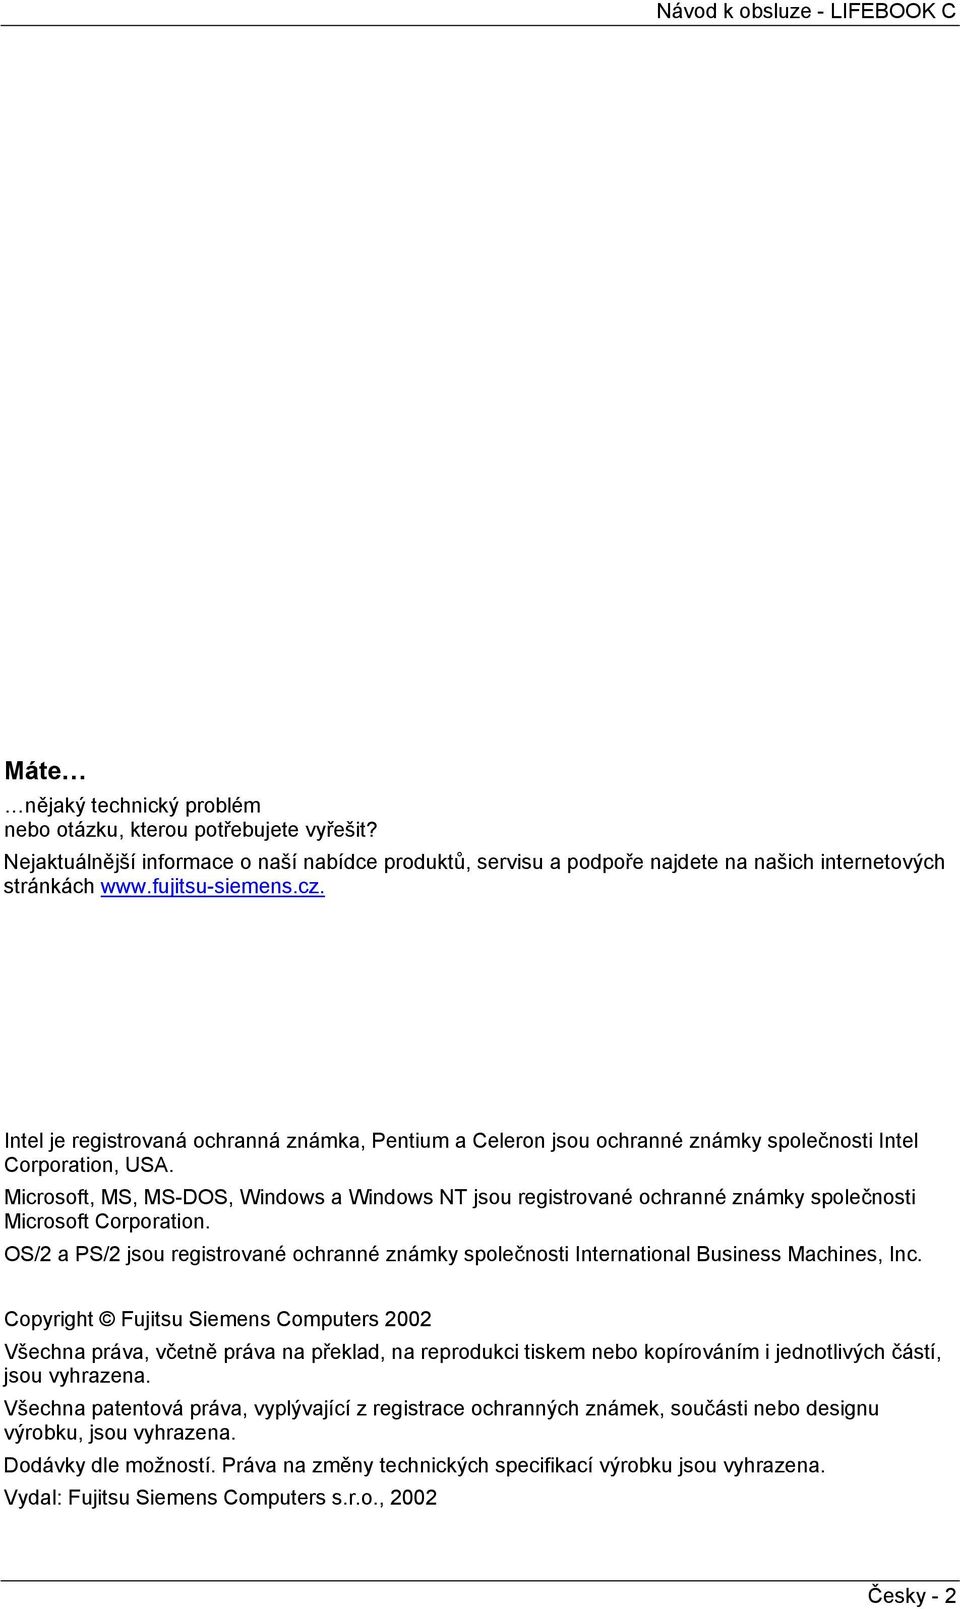 Mcrosoft, MS, MS-DOS, Wndows a Wndows NT jsou regstrované ochranné známky společnost Mcrosoft Corporaton. OS/2 a PS/2 jsou regstrované ochranné známky společnost Internatonal Busness Machnes, Inc.